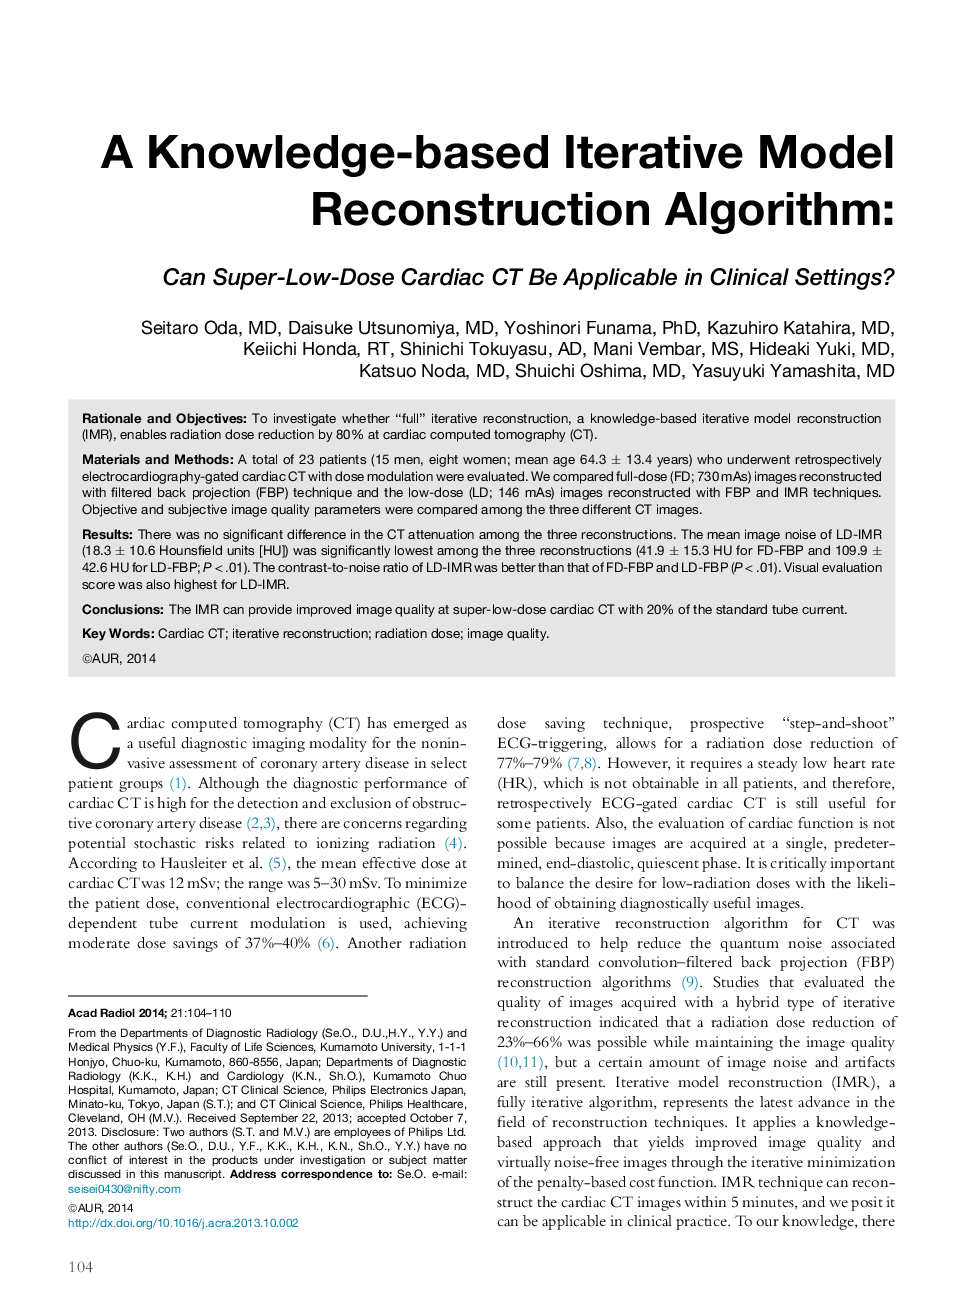 الگوریتم بازسازی الگوریتم مبتنی بر دانش 